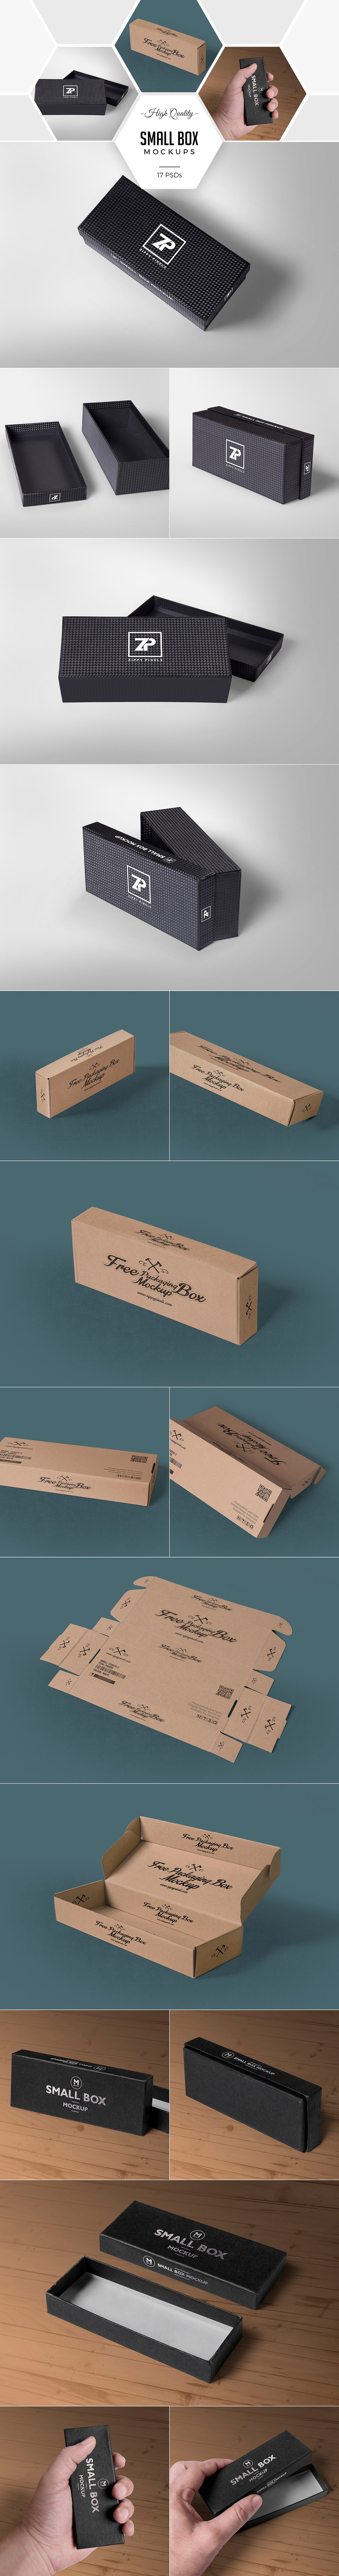 79款惊人奢华的包装样机 79 Amazing Packaging Mockups Bundle插图8